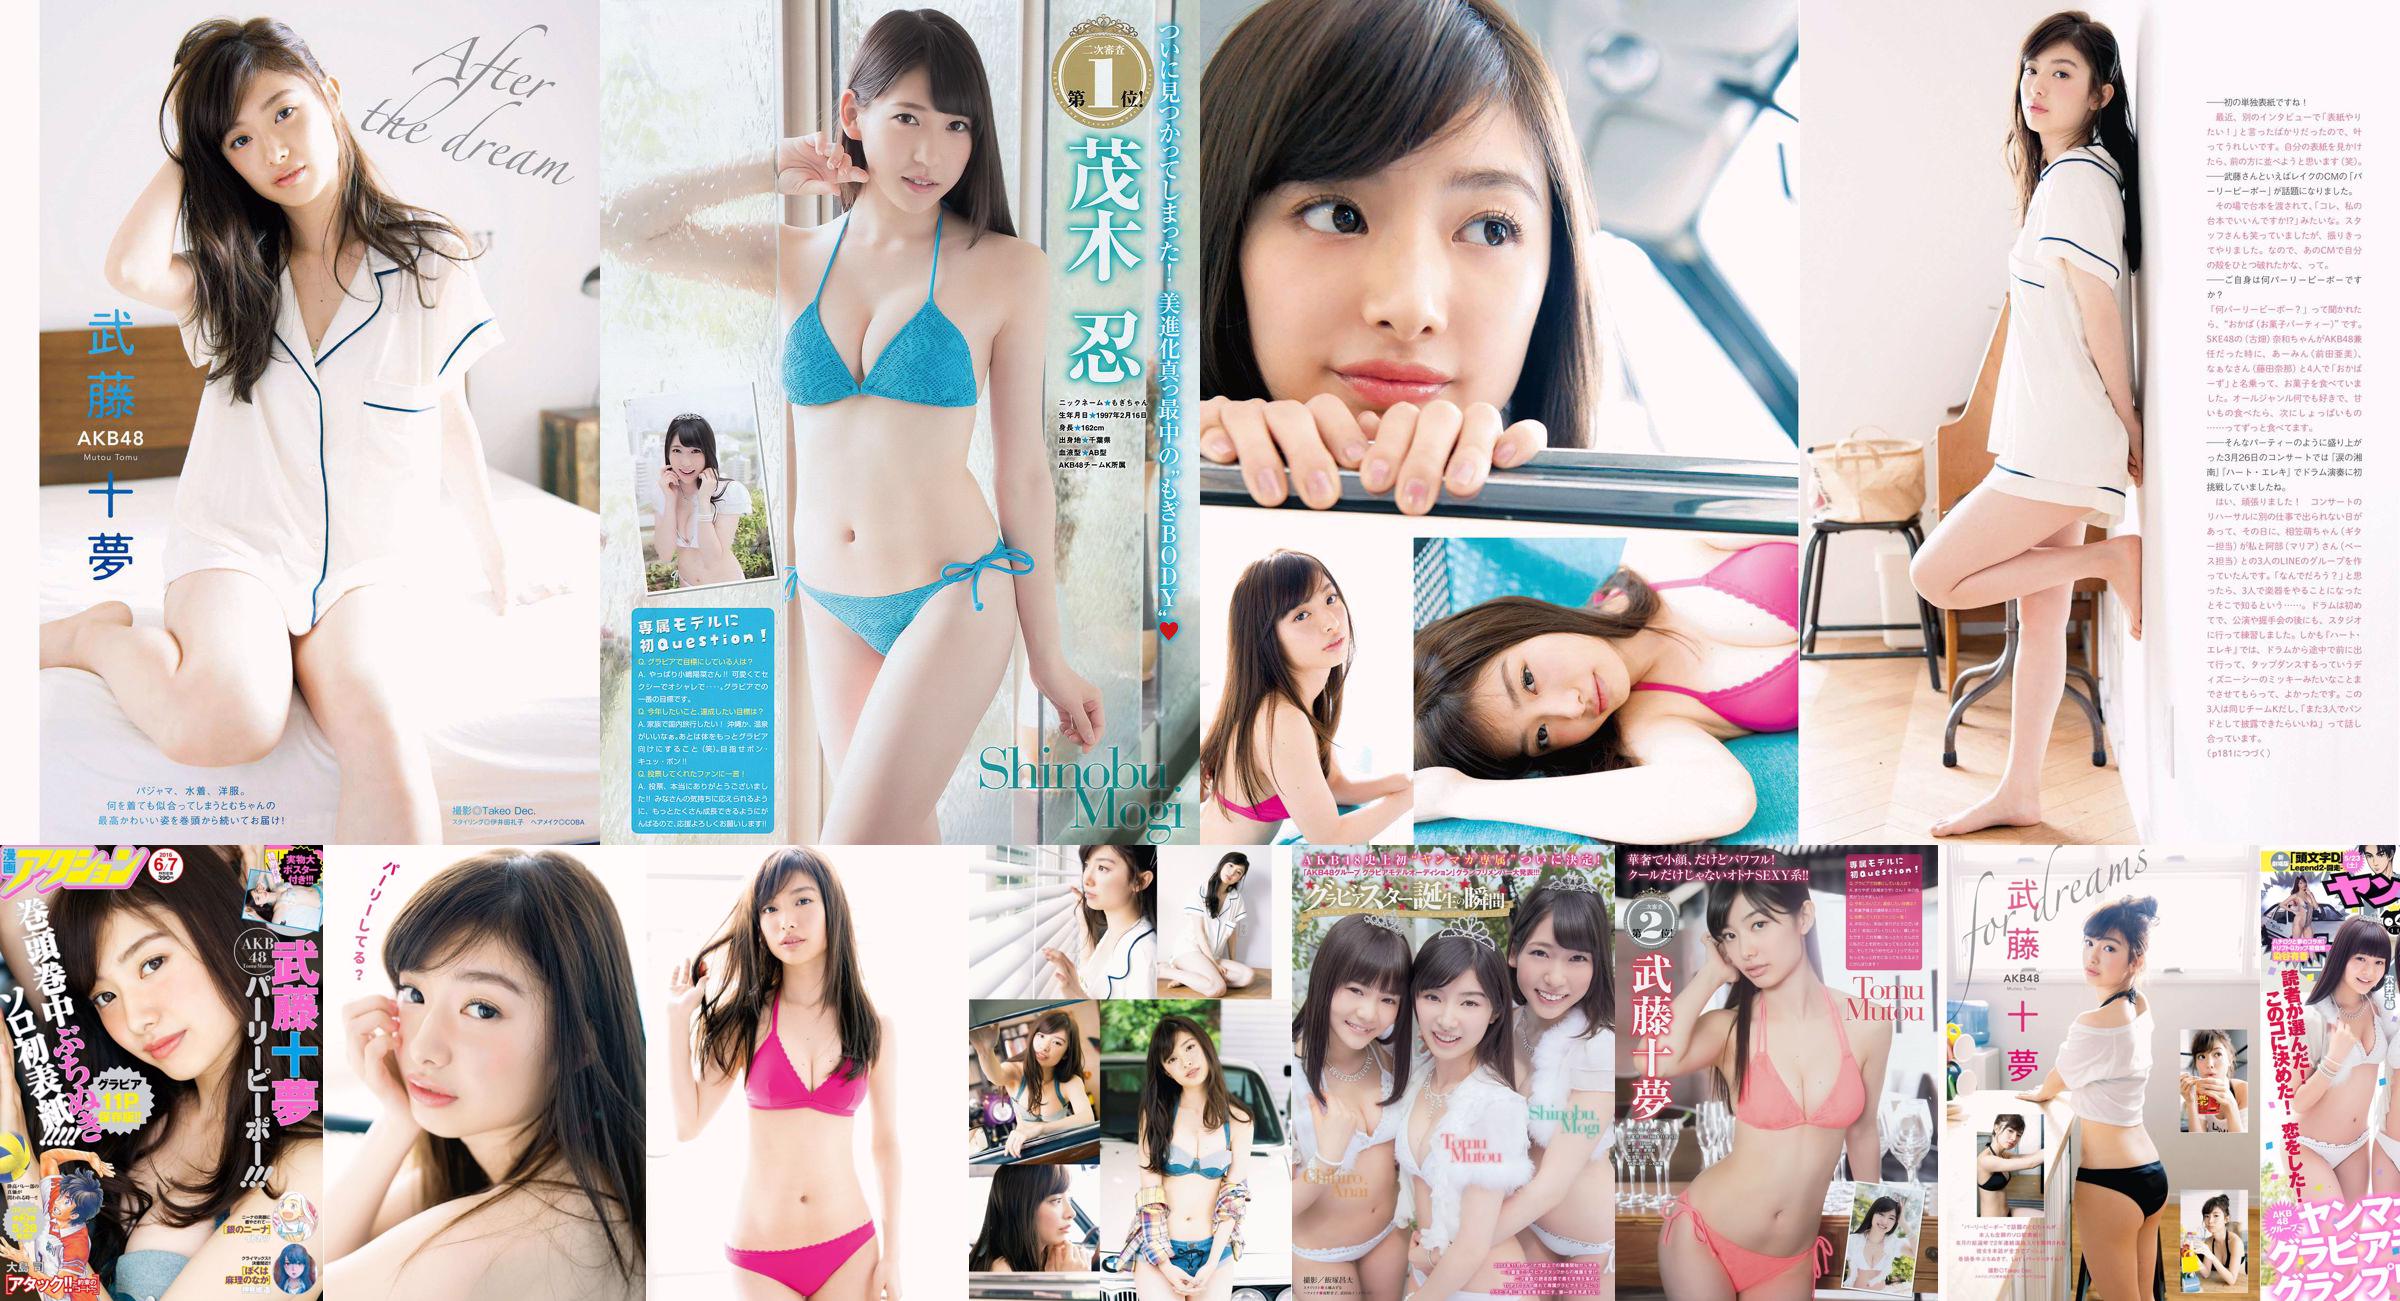 [Young Magazine] Tomu Muto Shinobu Mogi Chihiro Anai Erina Mano Yuka Someya 2015 No.25 Photograph No.00f2ef Page 3